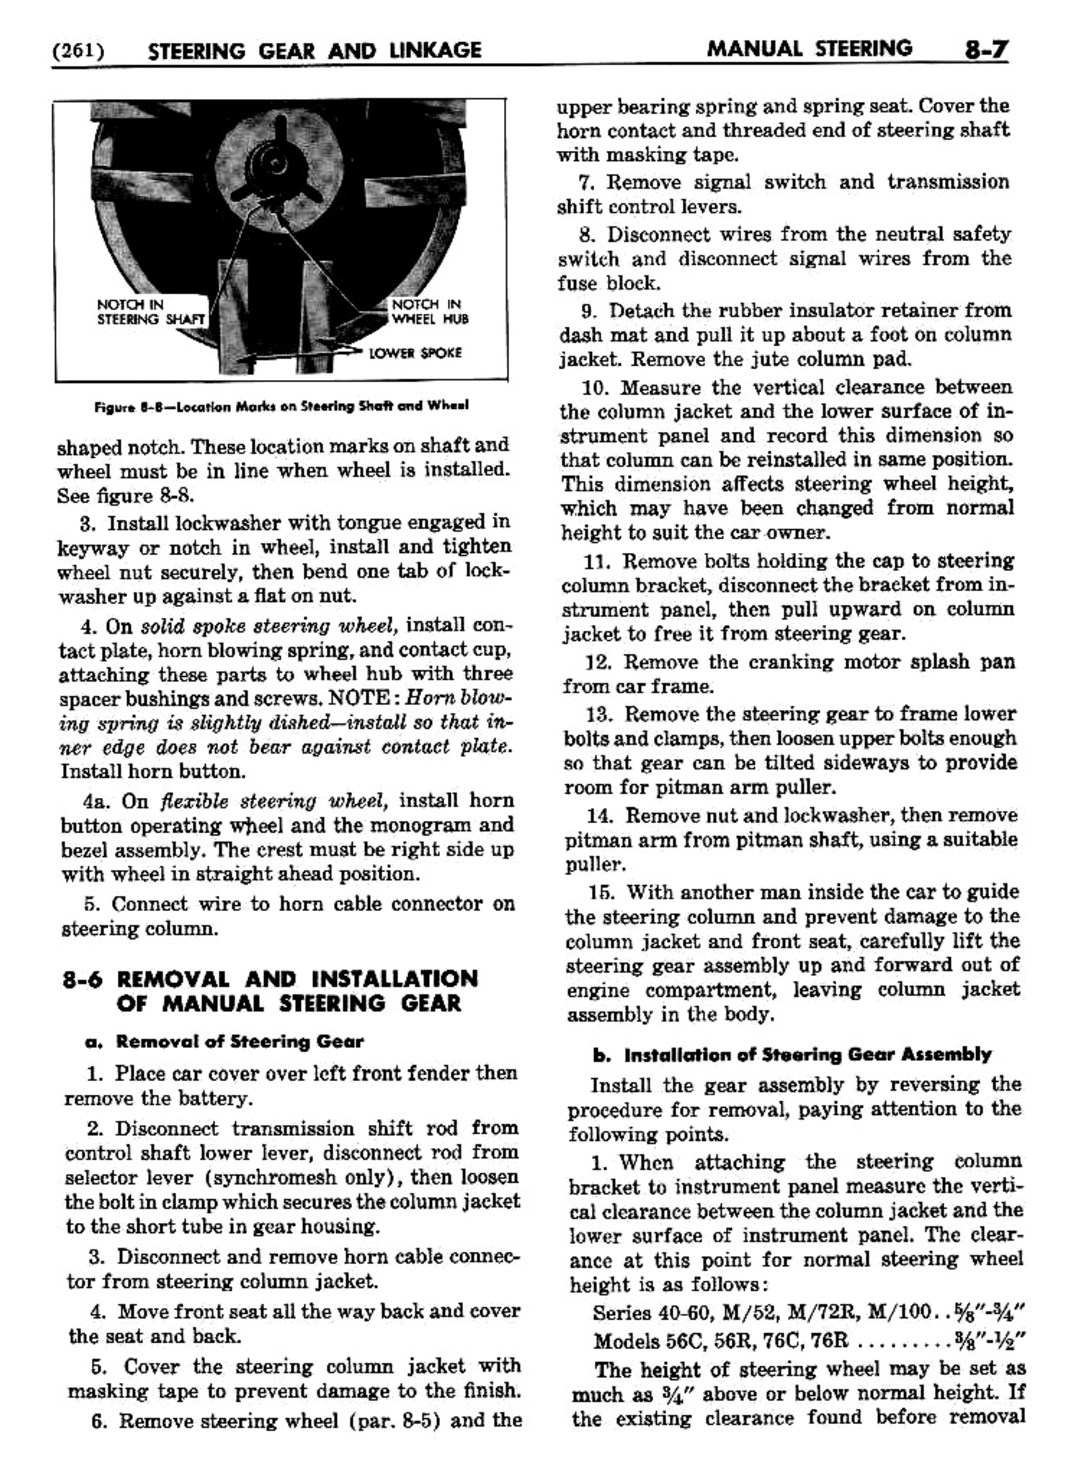 n_09 1954 Buick Shop Manual - Steering-007-007.jpg